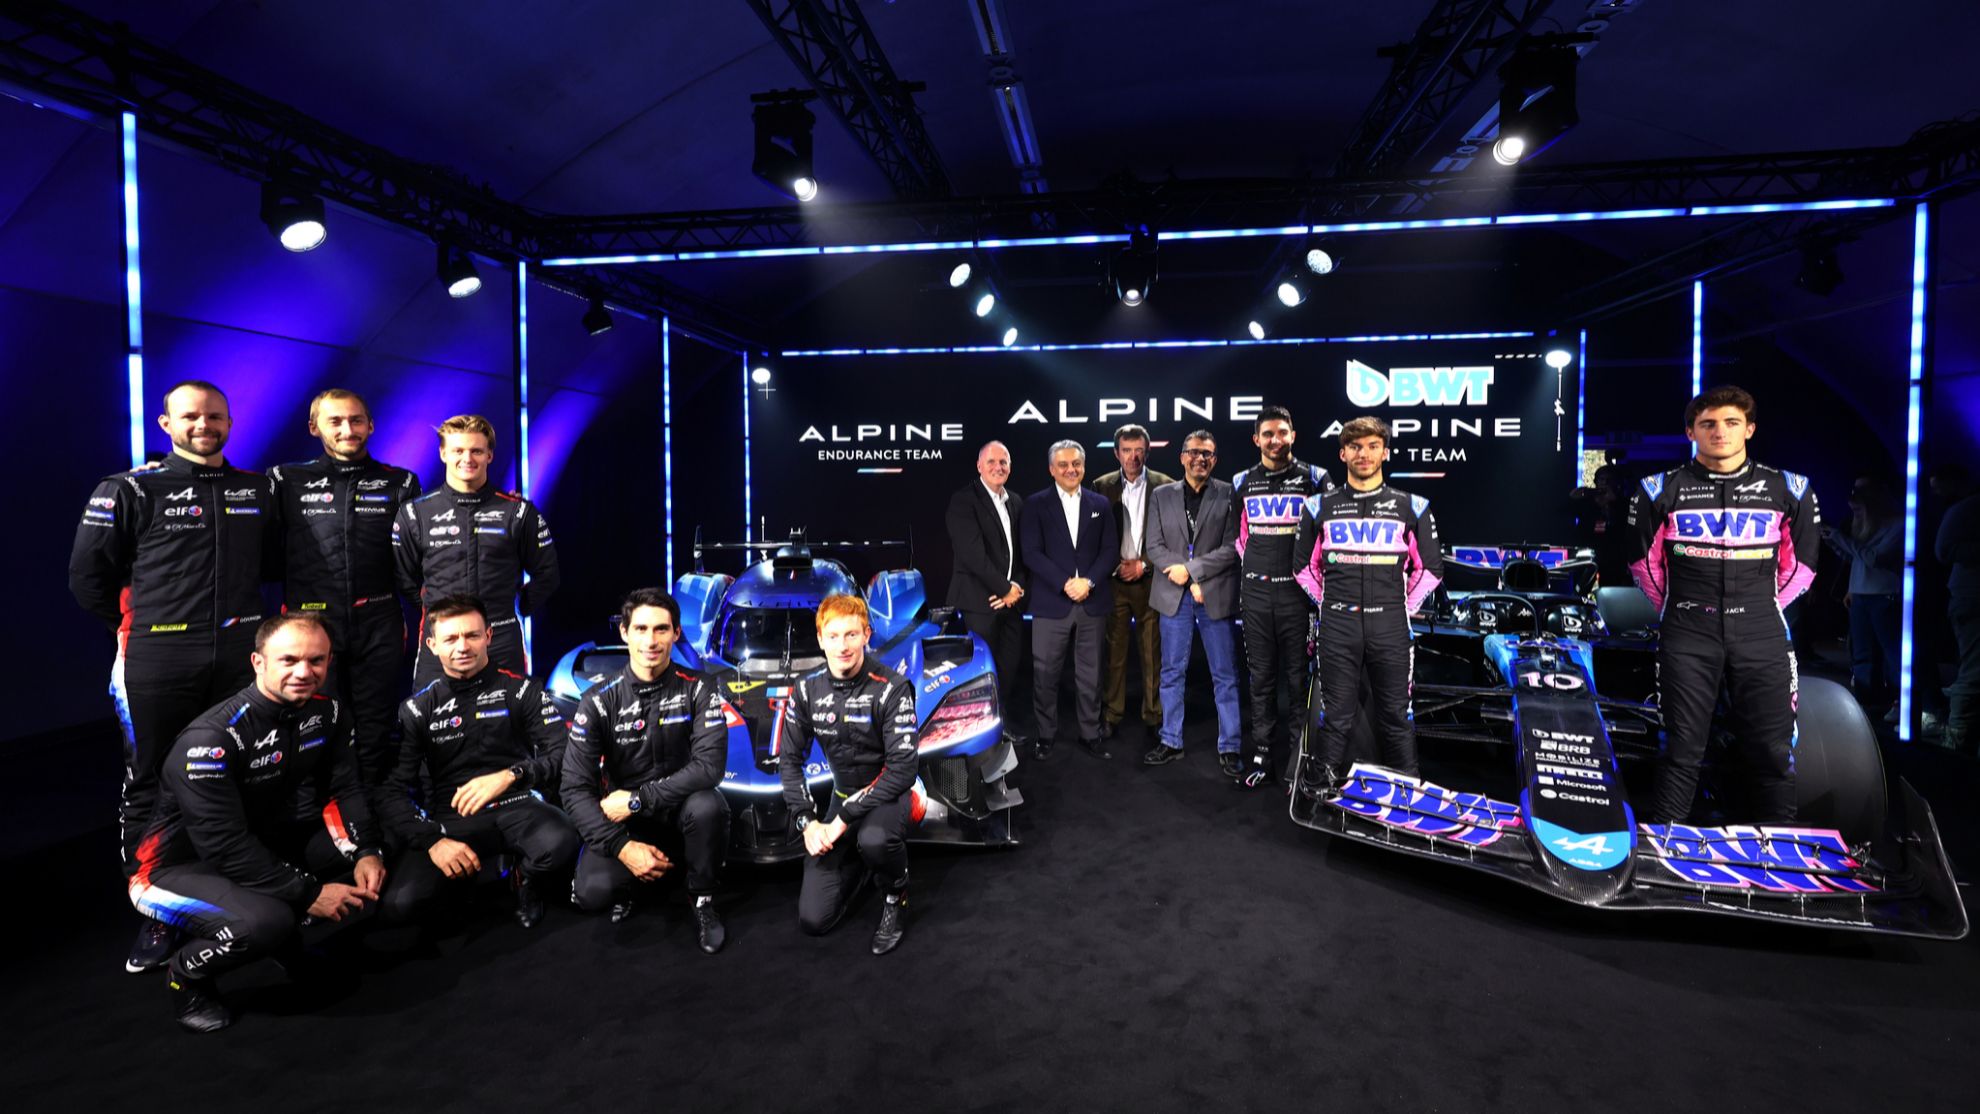 Alpine estar presente en los dos grandes mundiales FIA: F1 y WEC.